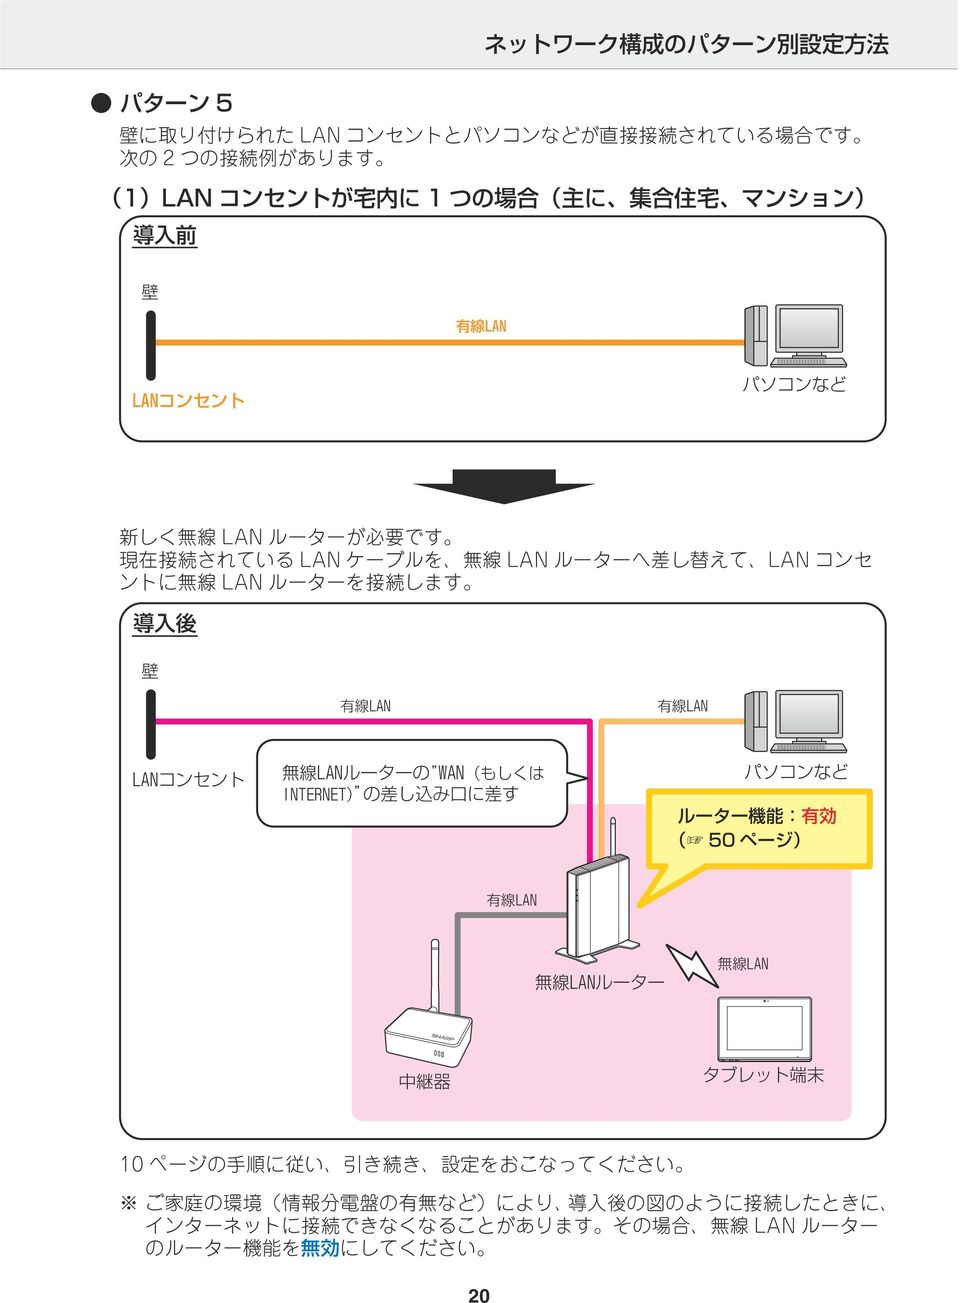 LAN コンセ ントに 無 線 LAN ルーターを 接 続 します ルーター 機 能 : 有 効 ( 50 ページ) 10 ページの 手 順 に 従 い 引 き 続 き 設 定 をおこなってください ご 家 庭 の 環 境 ( 情